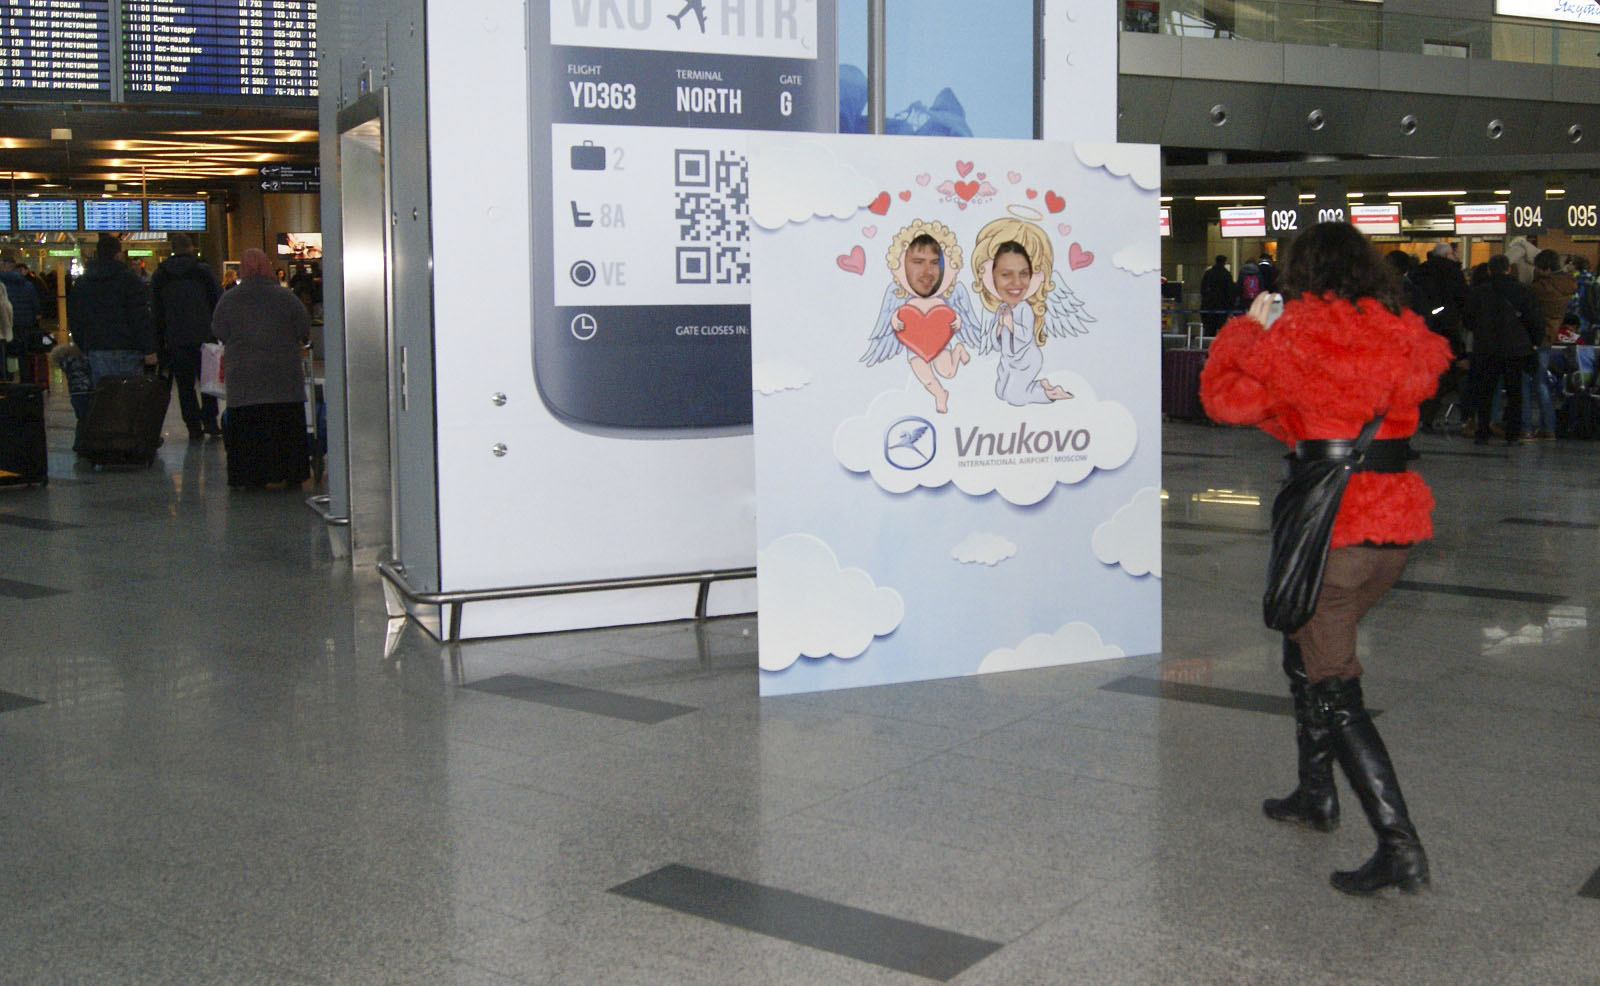 Международный аэропорт Внуково к Дню влюбленных приглашает пассажиров поучаствовать в мероприятии | Международный аэропорт Внуково